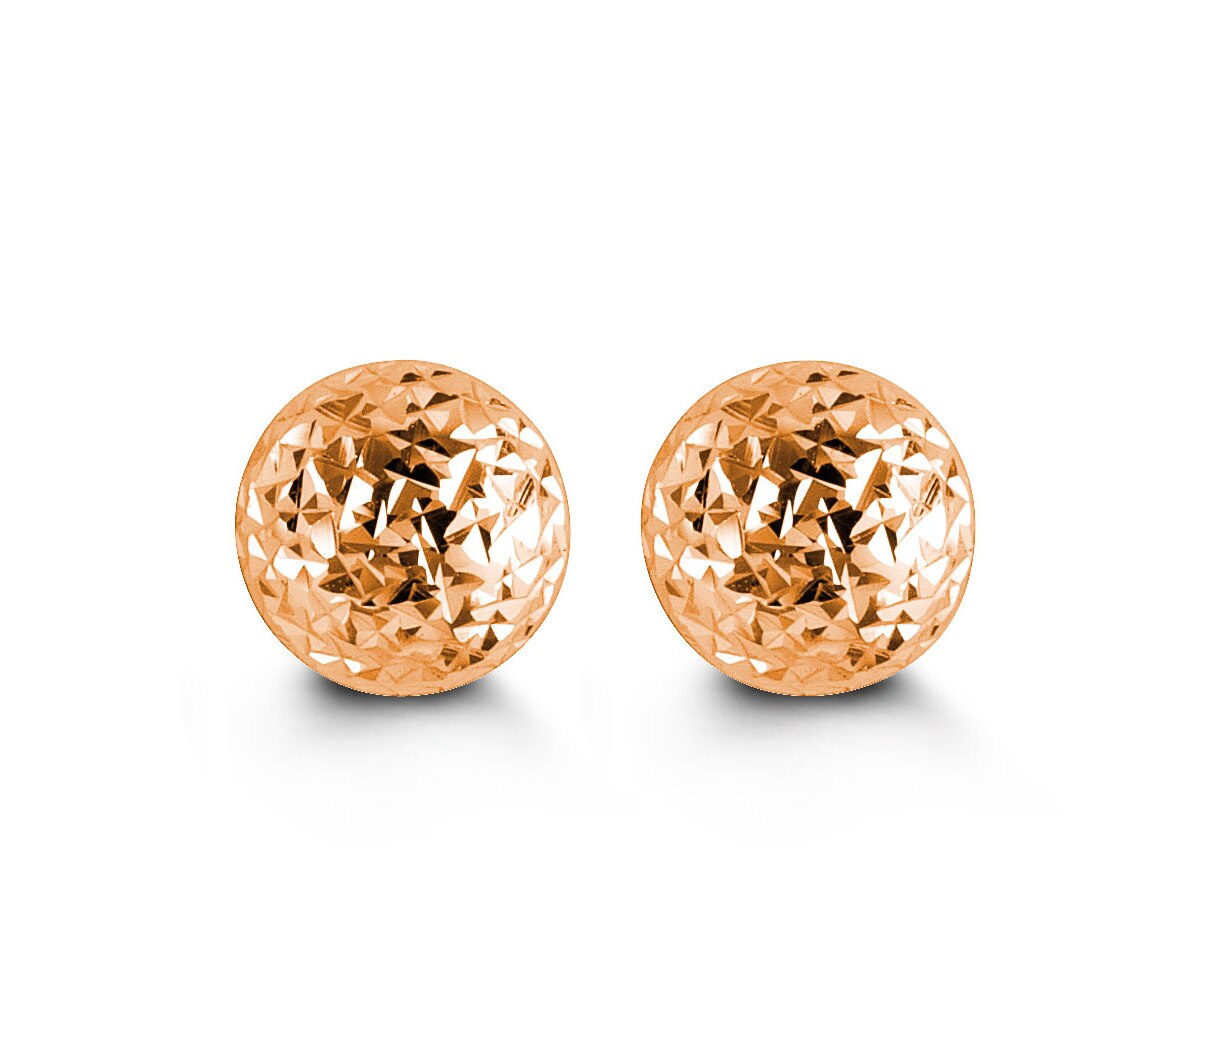 10KT Rose Gold Textured Ball Style Earrings 7mm Diameter